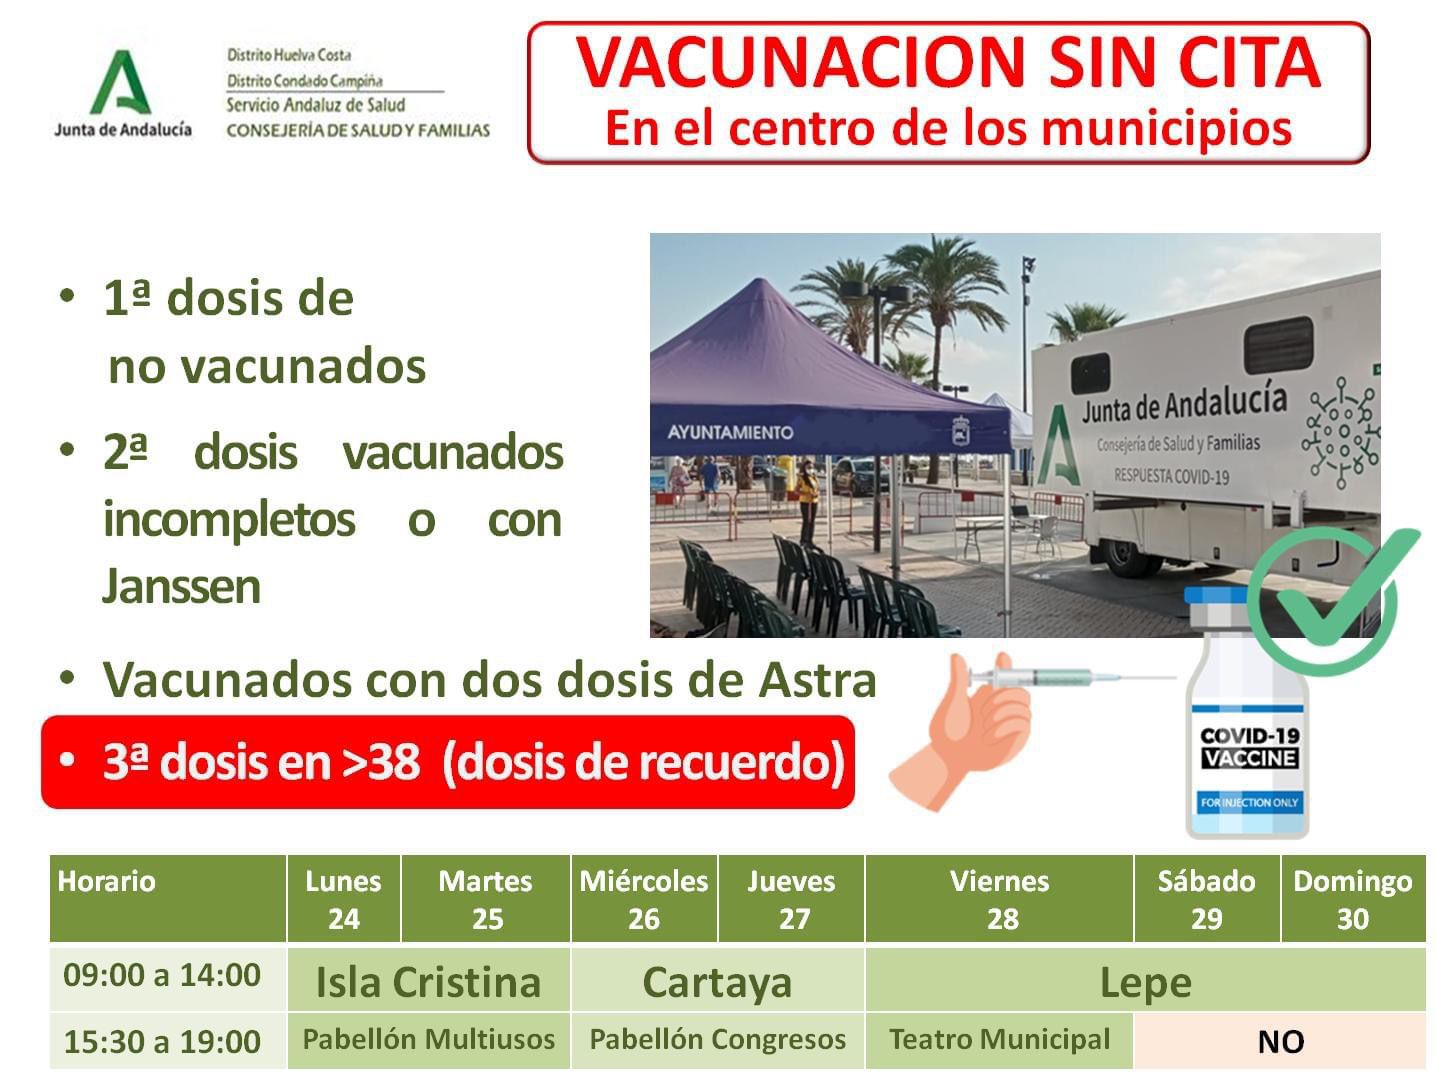 Vacunación sin cita contra el Covid, en Isla Cristina